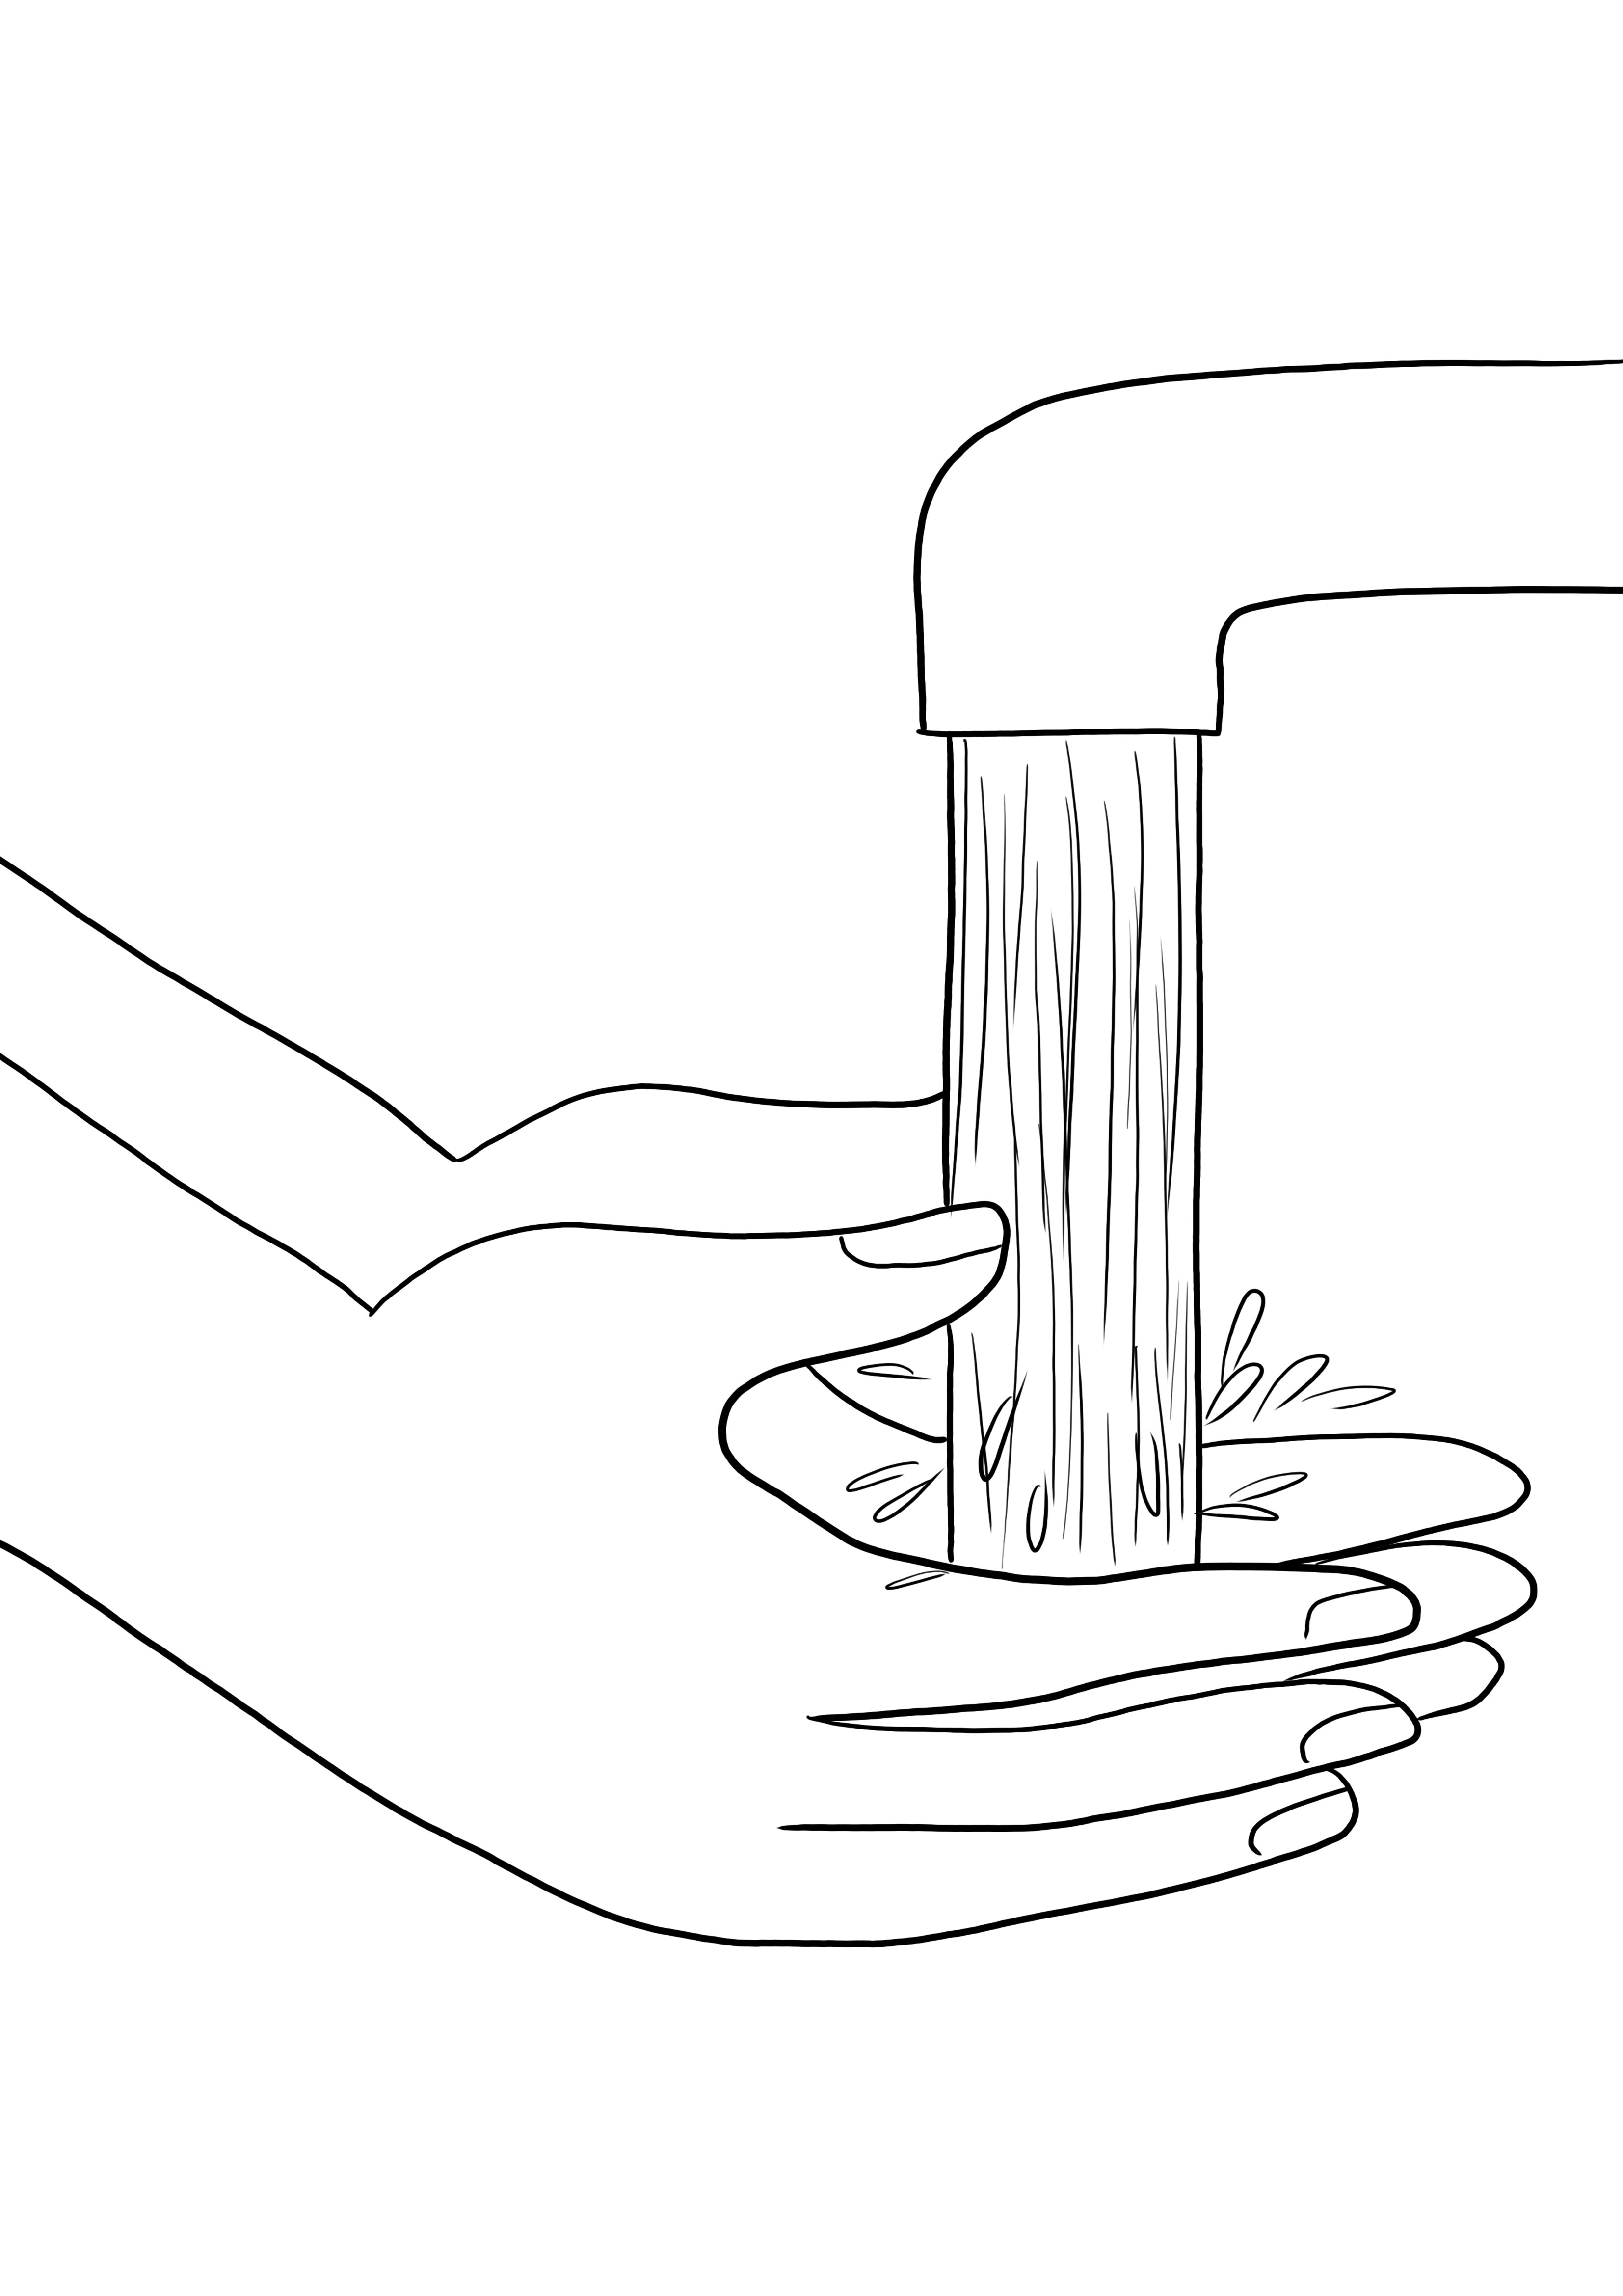 Coloração simples para lavar as mãos e imagem de impressão gratuita - ótima maneira de aprender sobre higiene